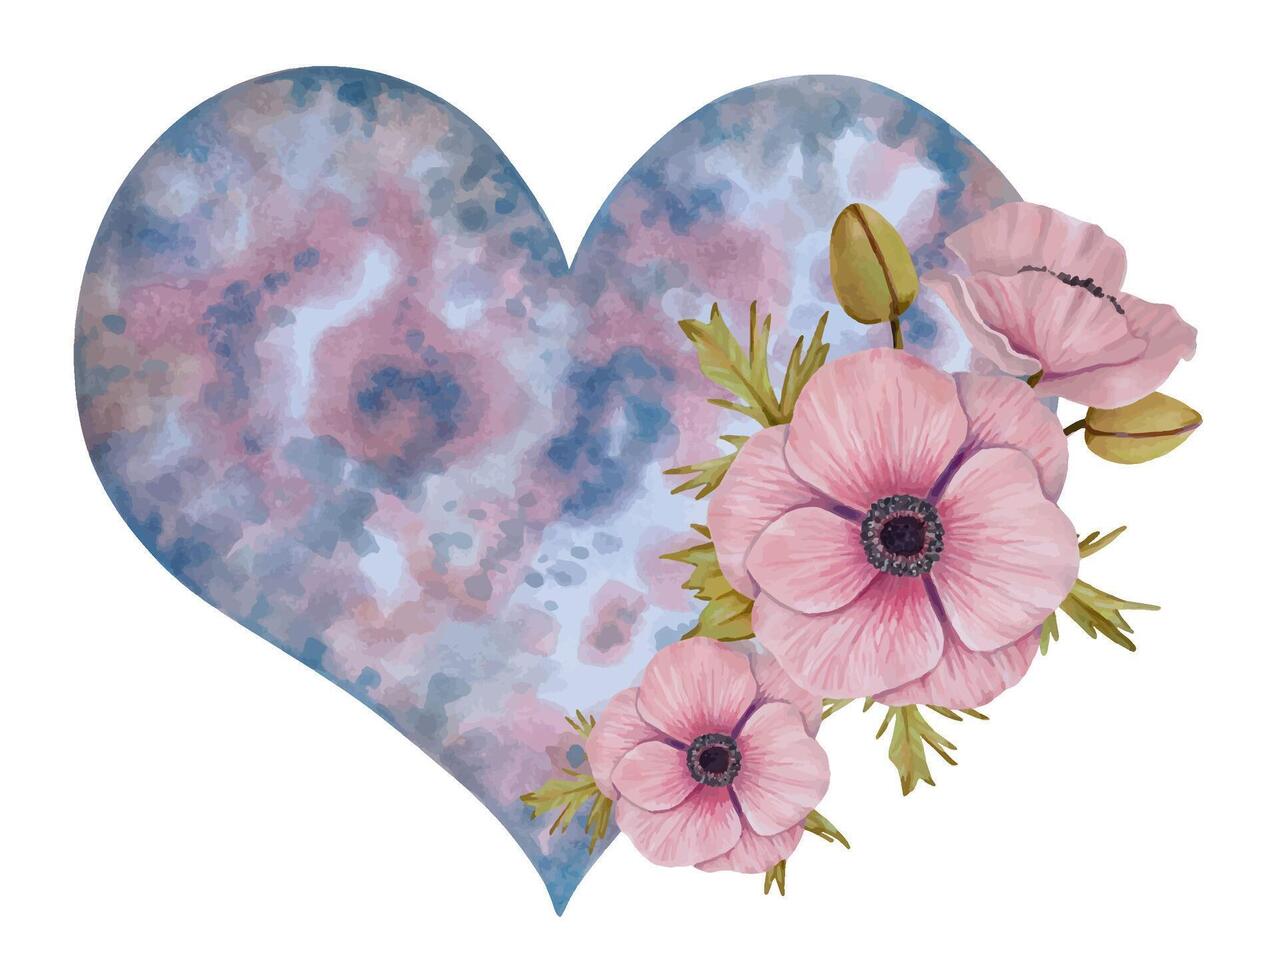 kosmisch hart met roze anemoon bloem.hemels botanisch element voor Valentijnsdag dag, moeder dag. esoterie en geestelijkheid concept.waterverf en markeerstift illustratie. vector